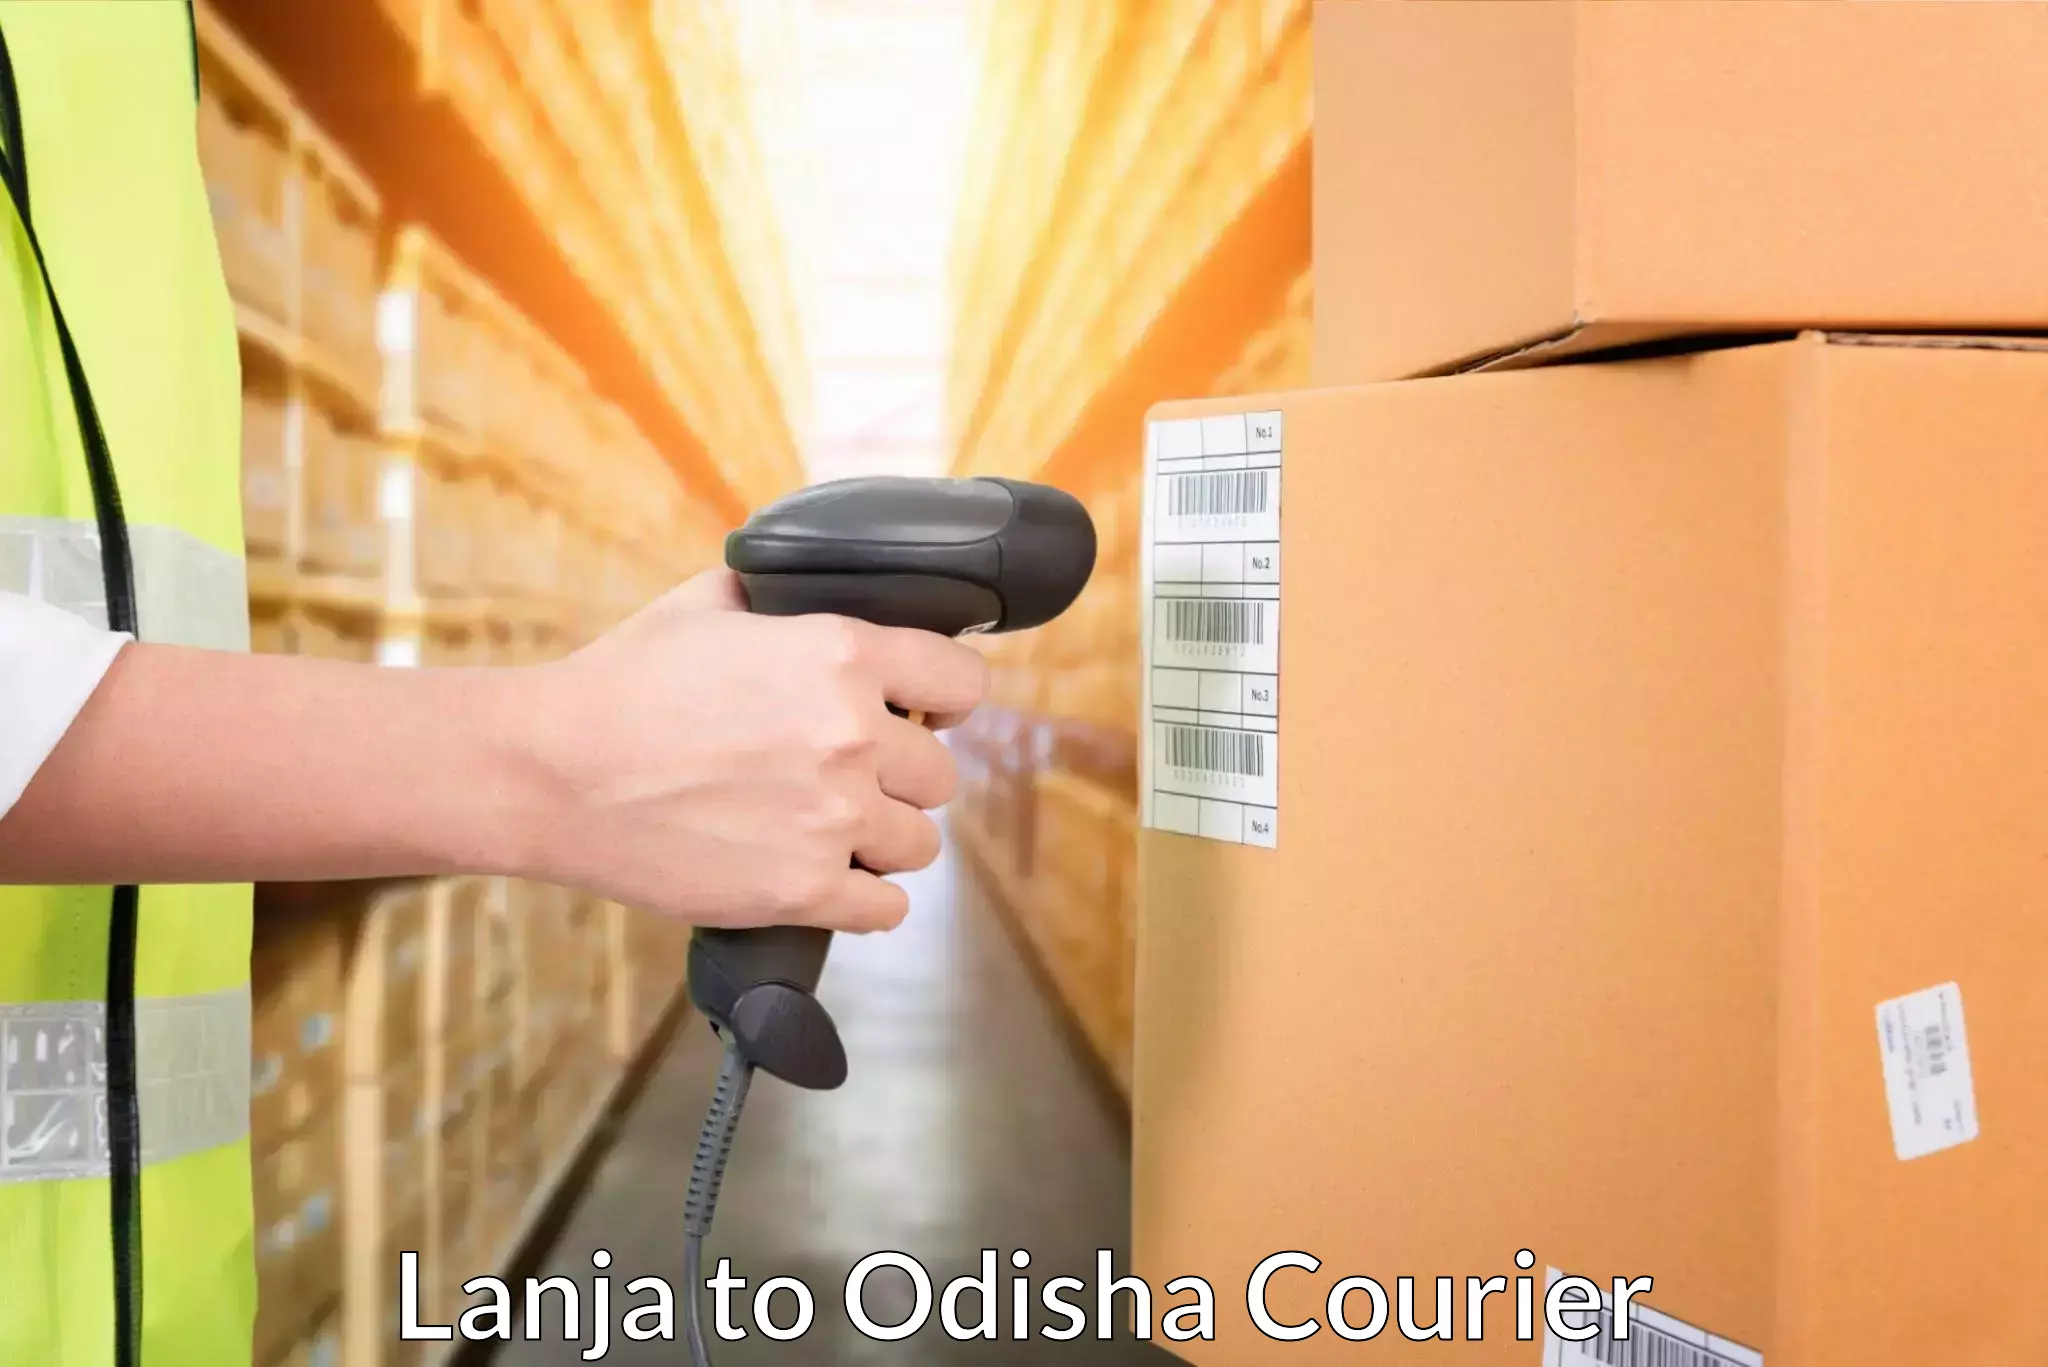 Same-day delivery options Lanja to Odisha